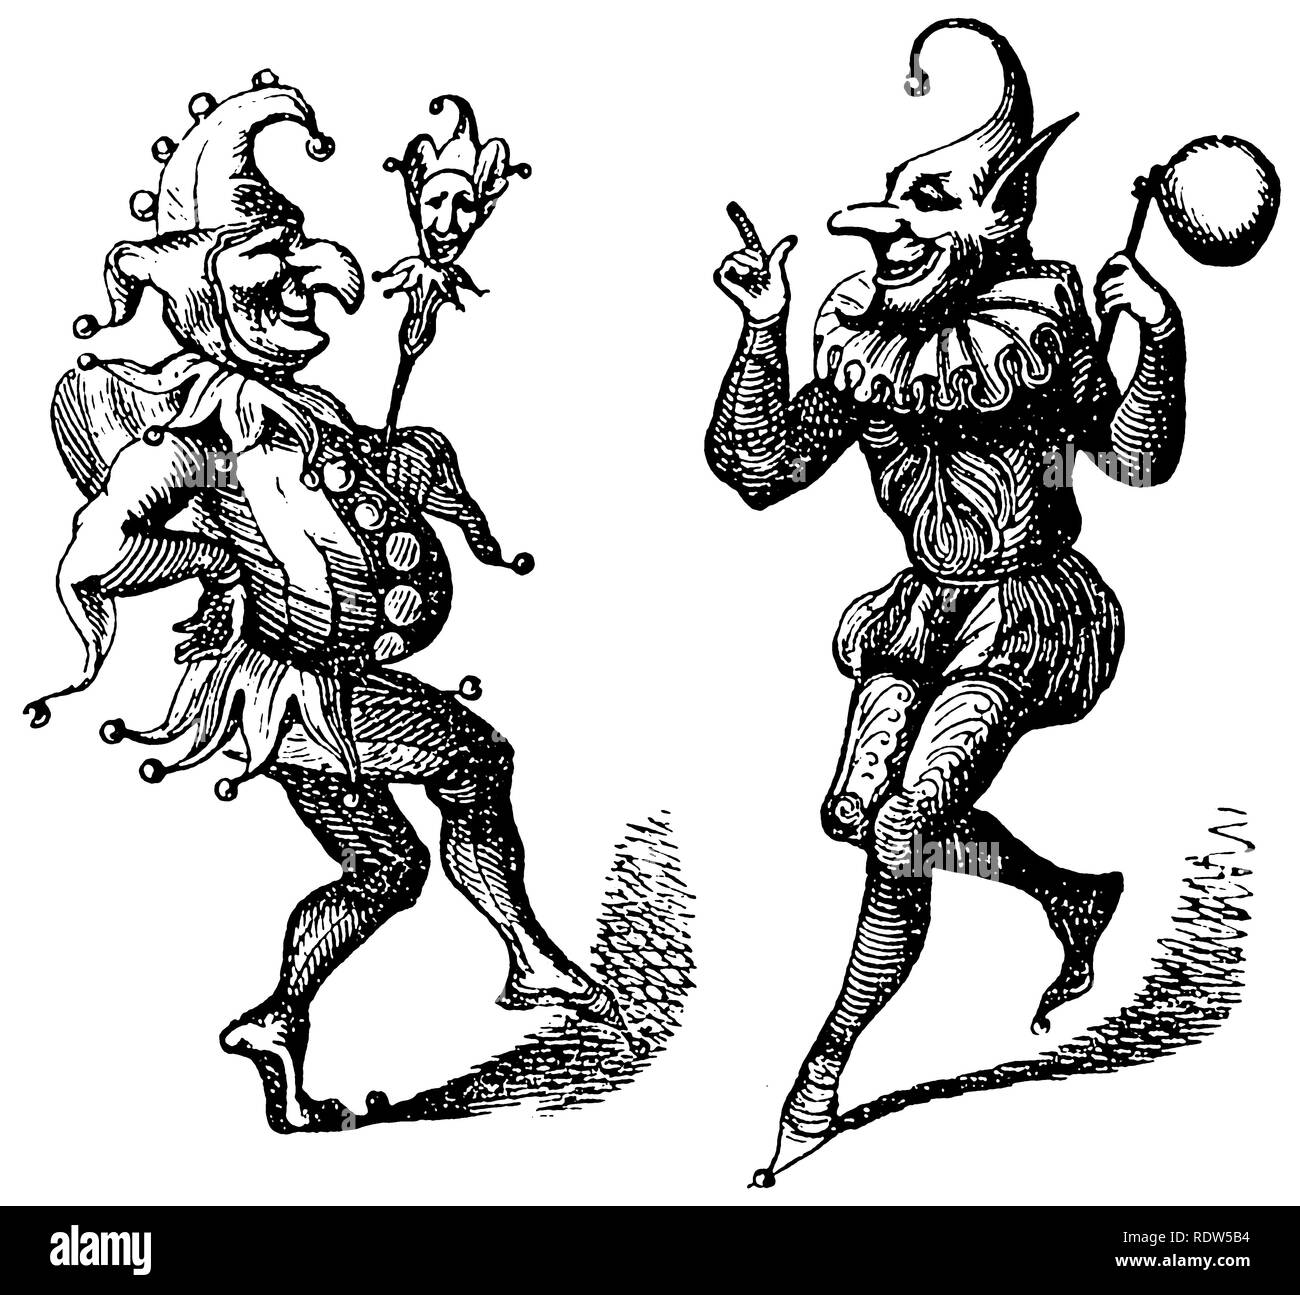 Deux Harlequins dansants, ou Jesters, d'une coupe de bois vintage vendue comme image de stock, ou bloc de stock. Banque D'Images